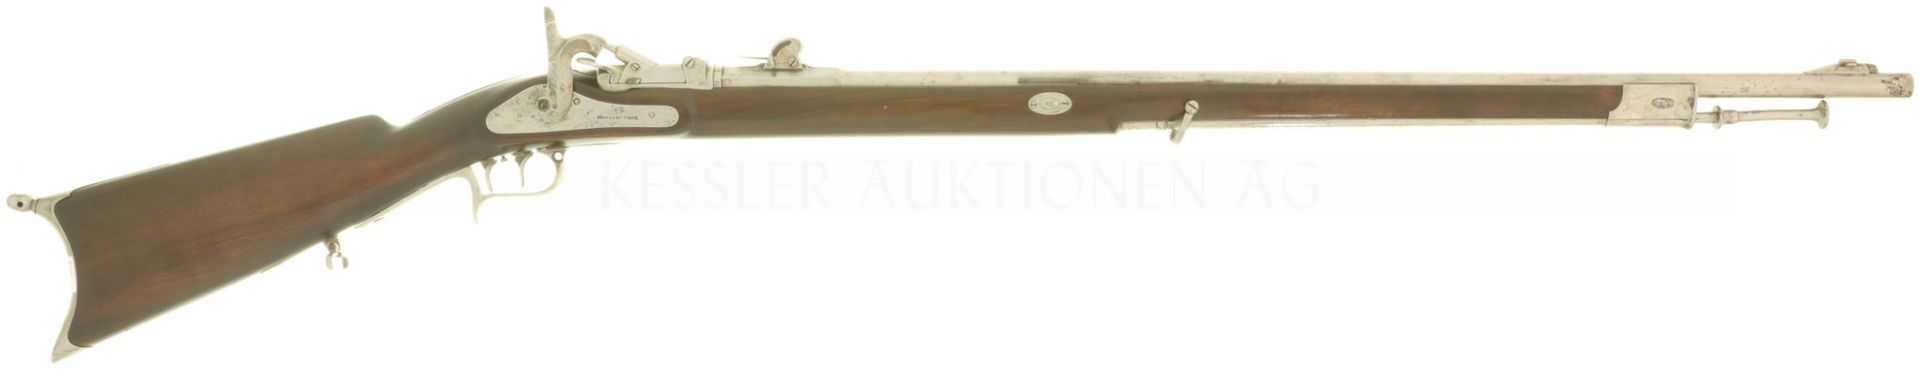 Scharfschützengewehr, ziviler Feldstutzer 1851/67, Kal. 10.4mmRF